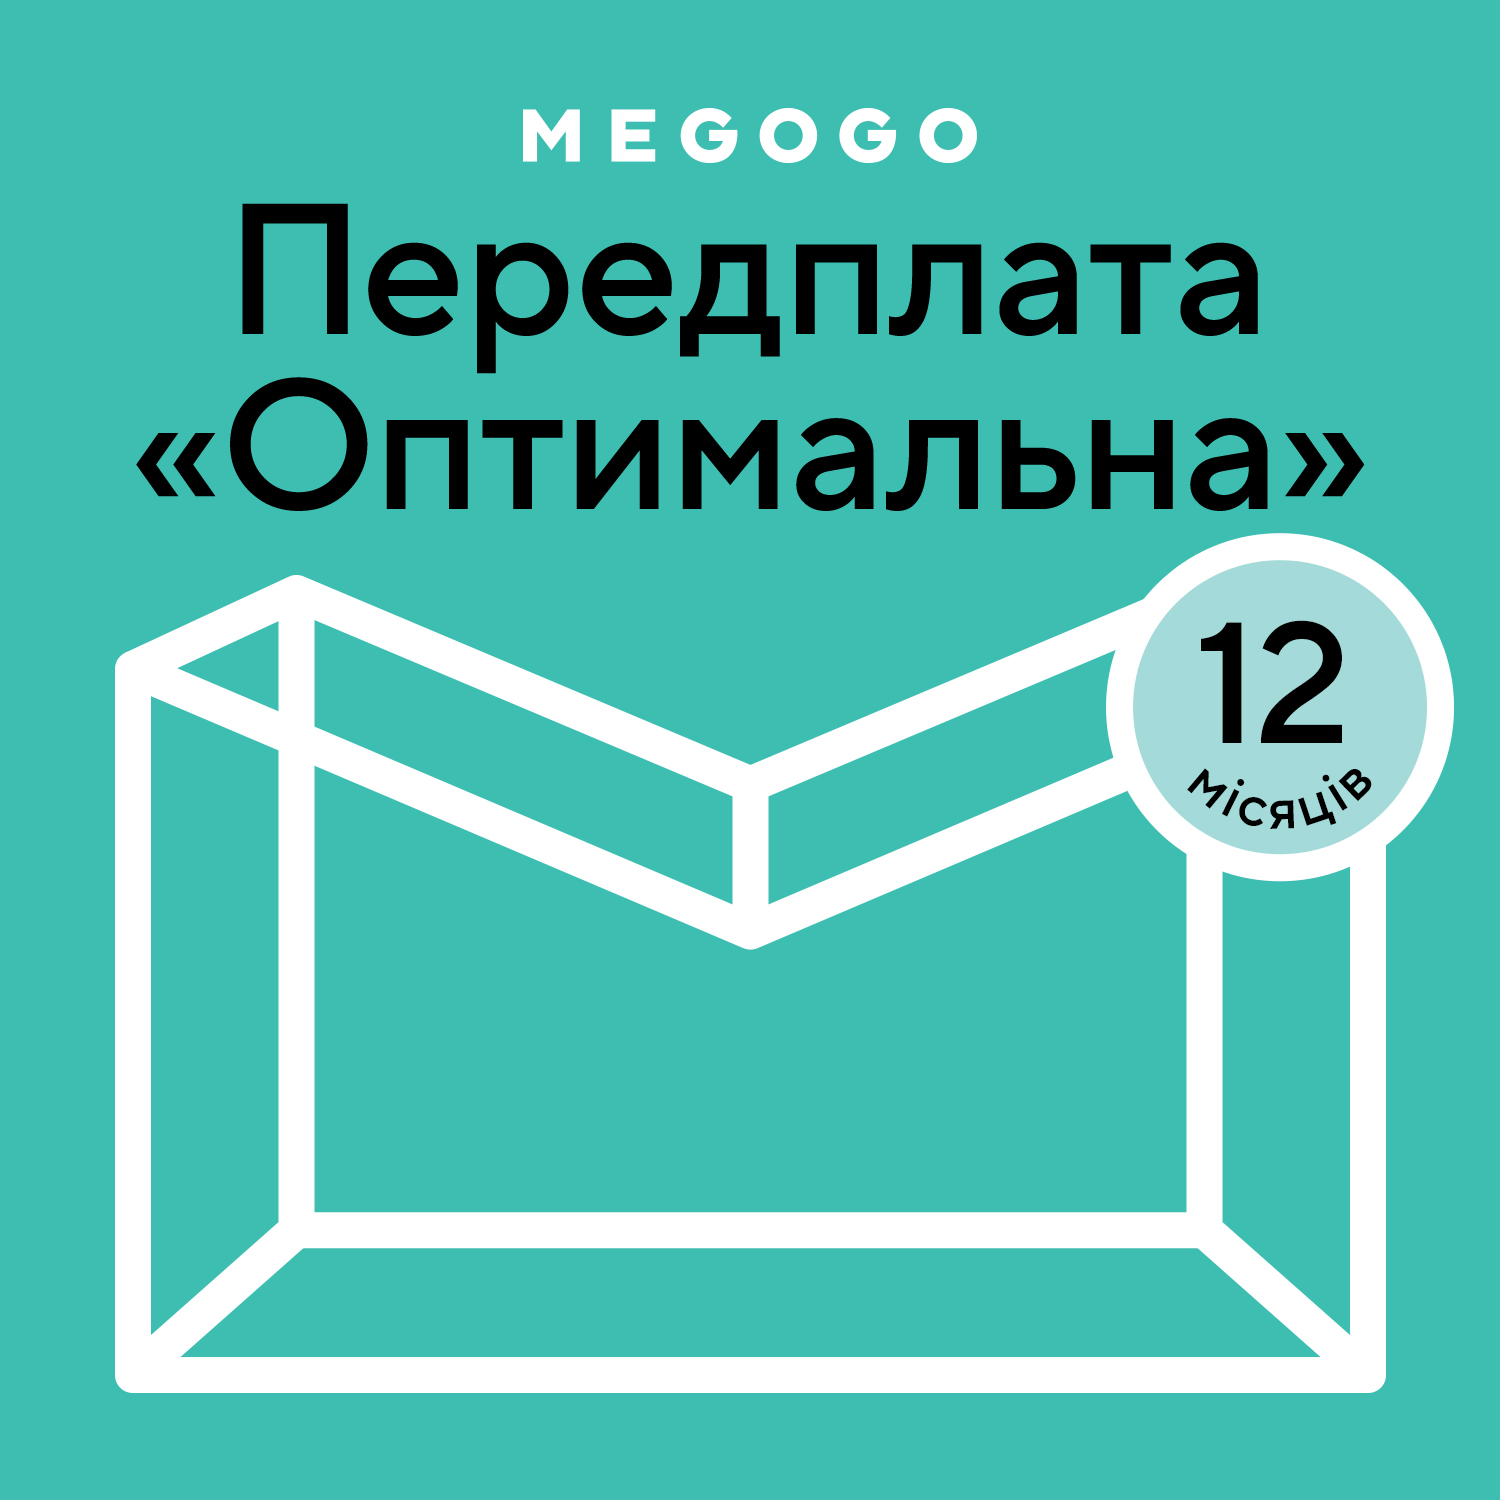 MEGOGO «Кино и ТВ: Оптимальная» 12 мес в Киеве